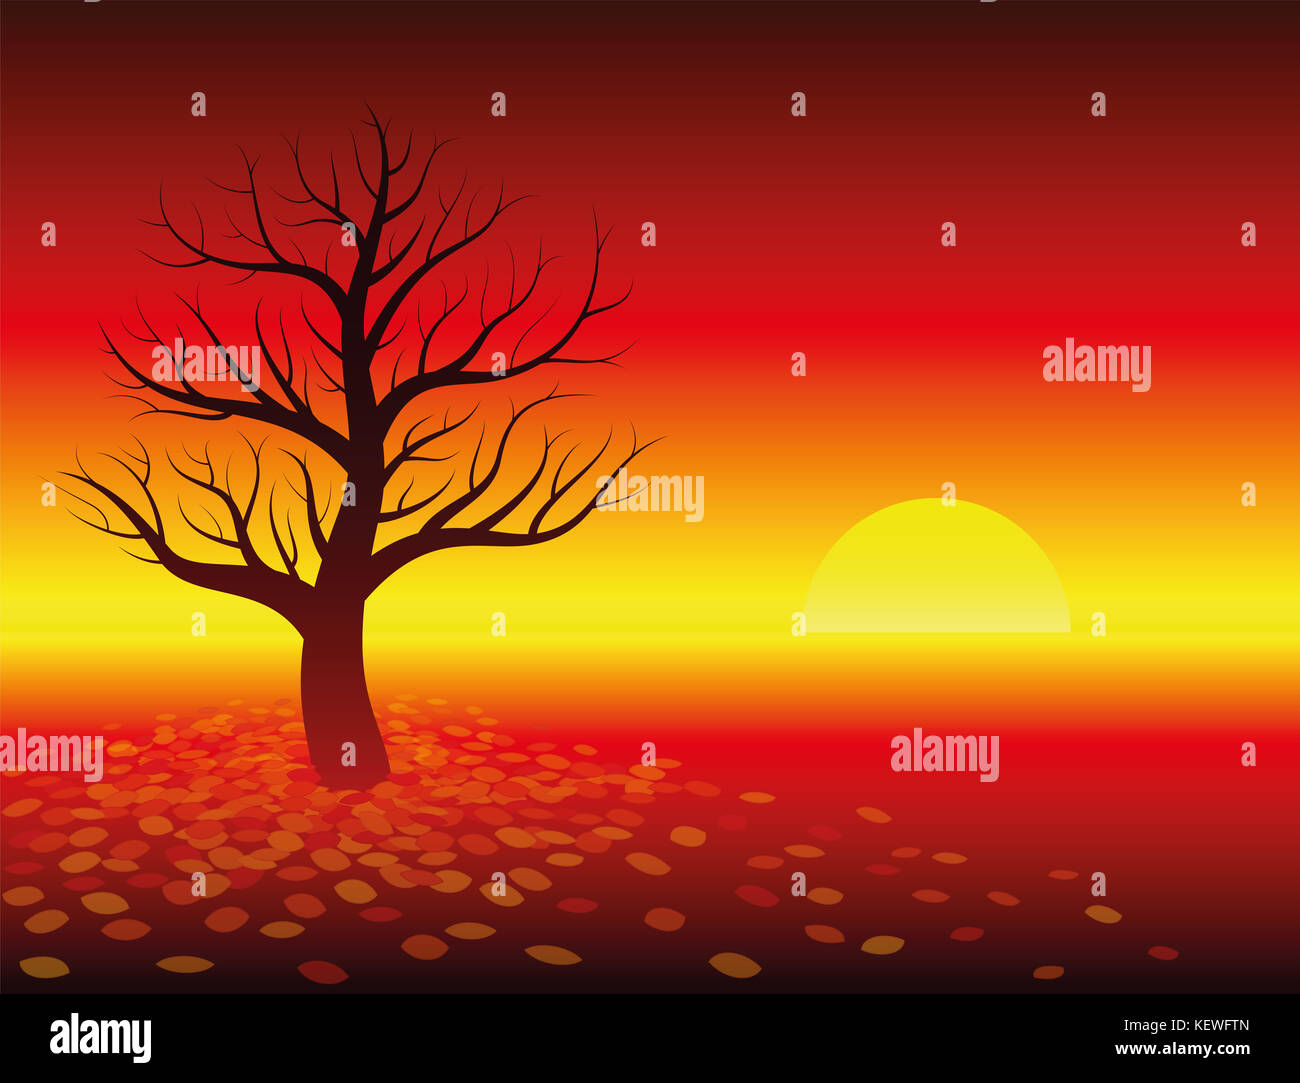 Atmósfera de otoño - Sunset en rojo brillante paisaje con árbol deshojado. ilustración de fondo degradado rojo cálido. Foto de stock